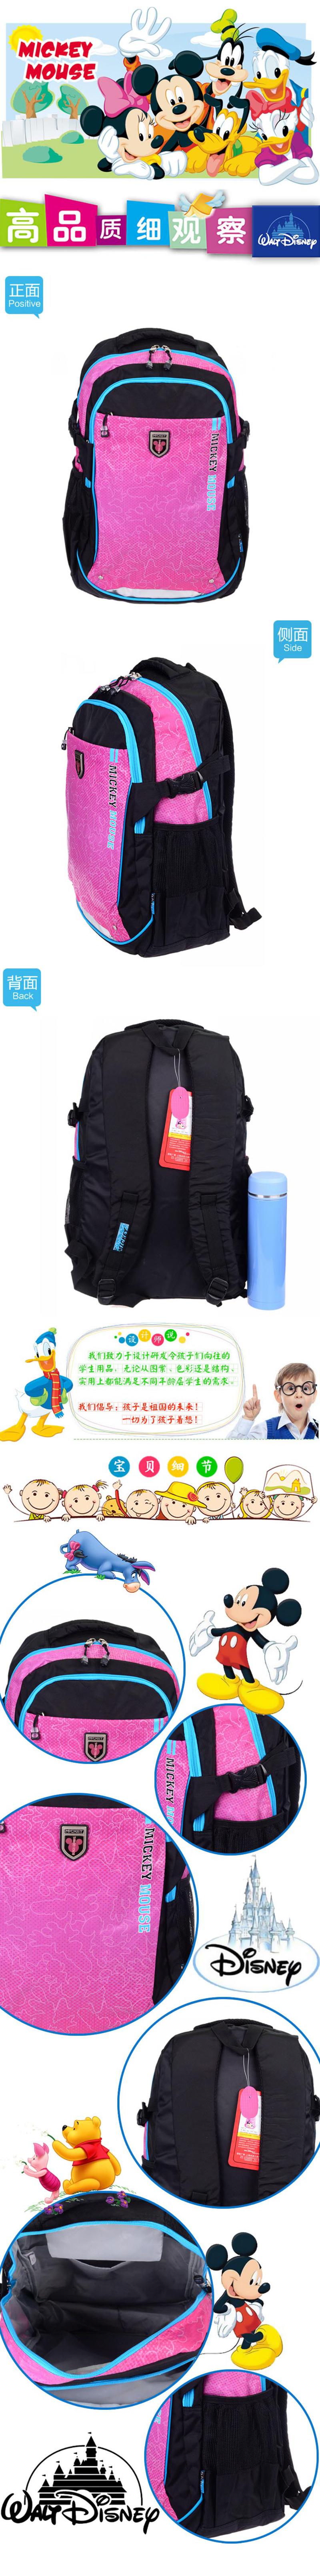 2015新款迪士尼米奇时尚大气简洁休闲双肩书包 学生上学休闲背包